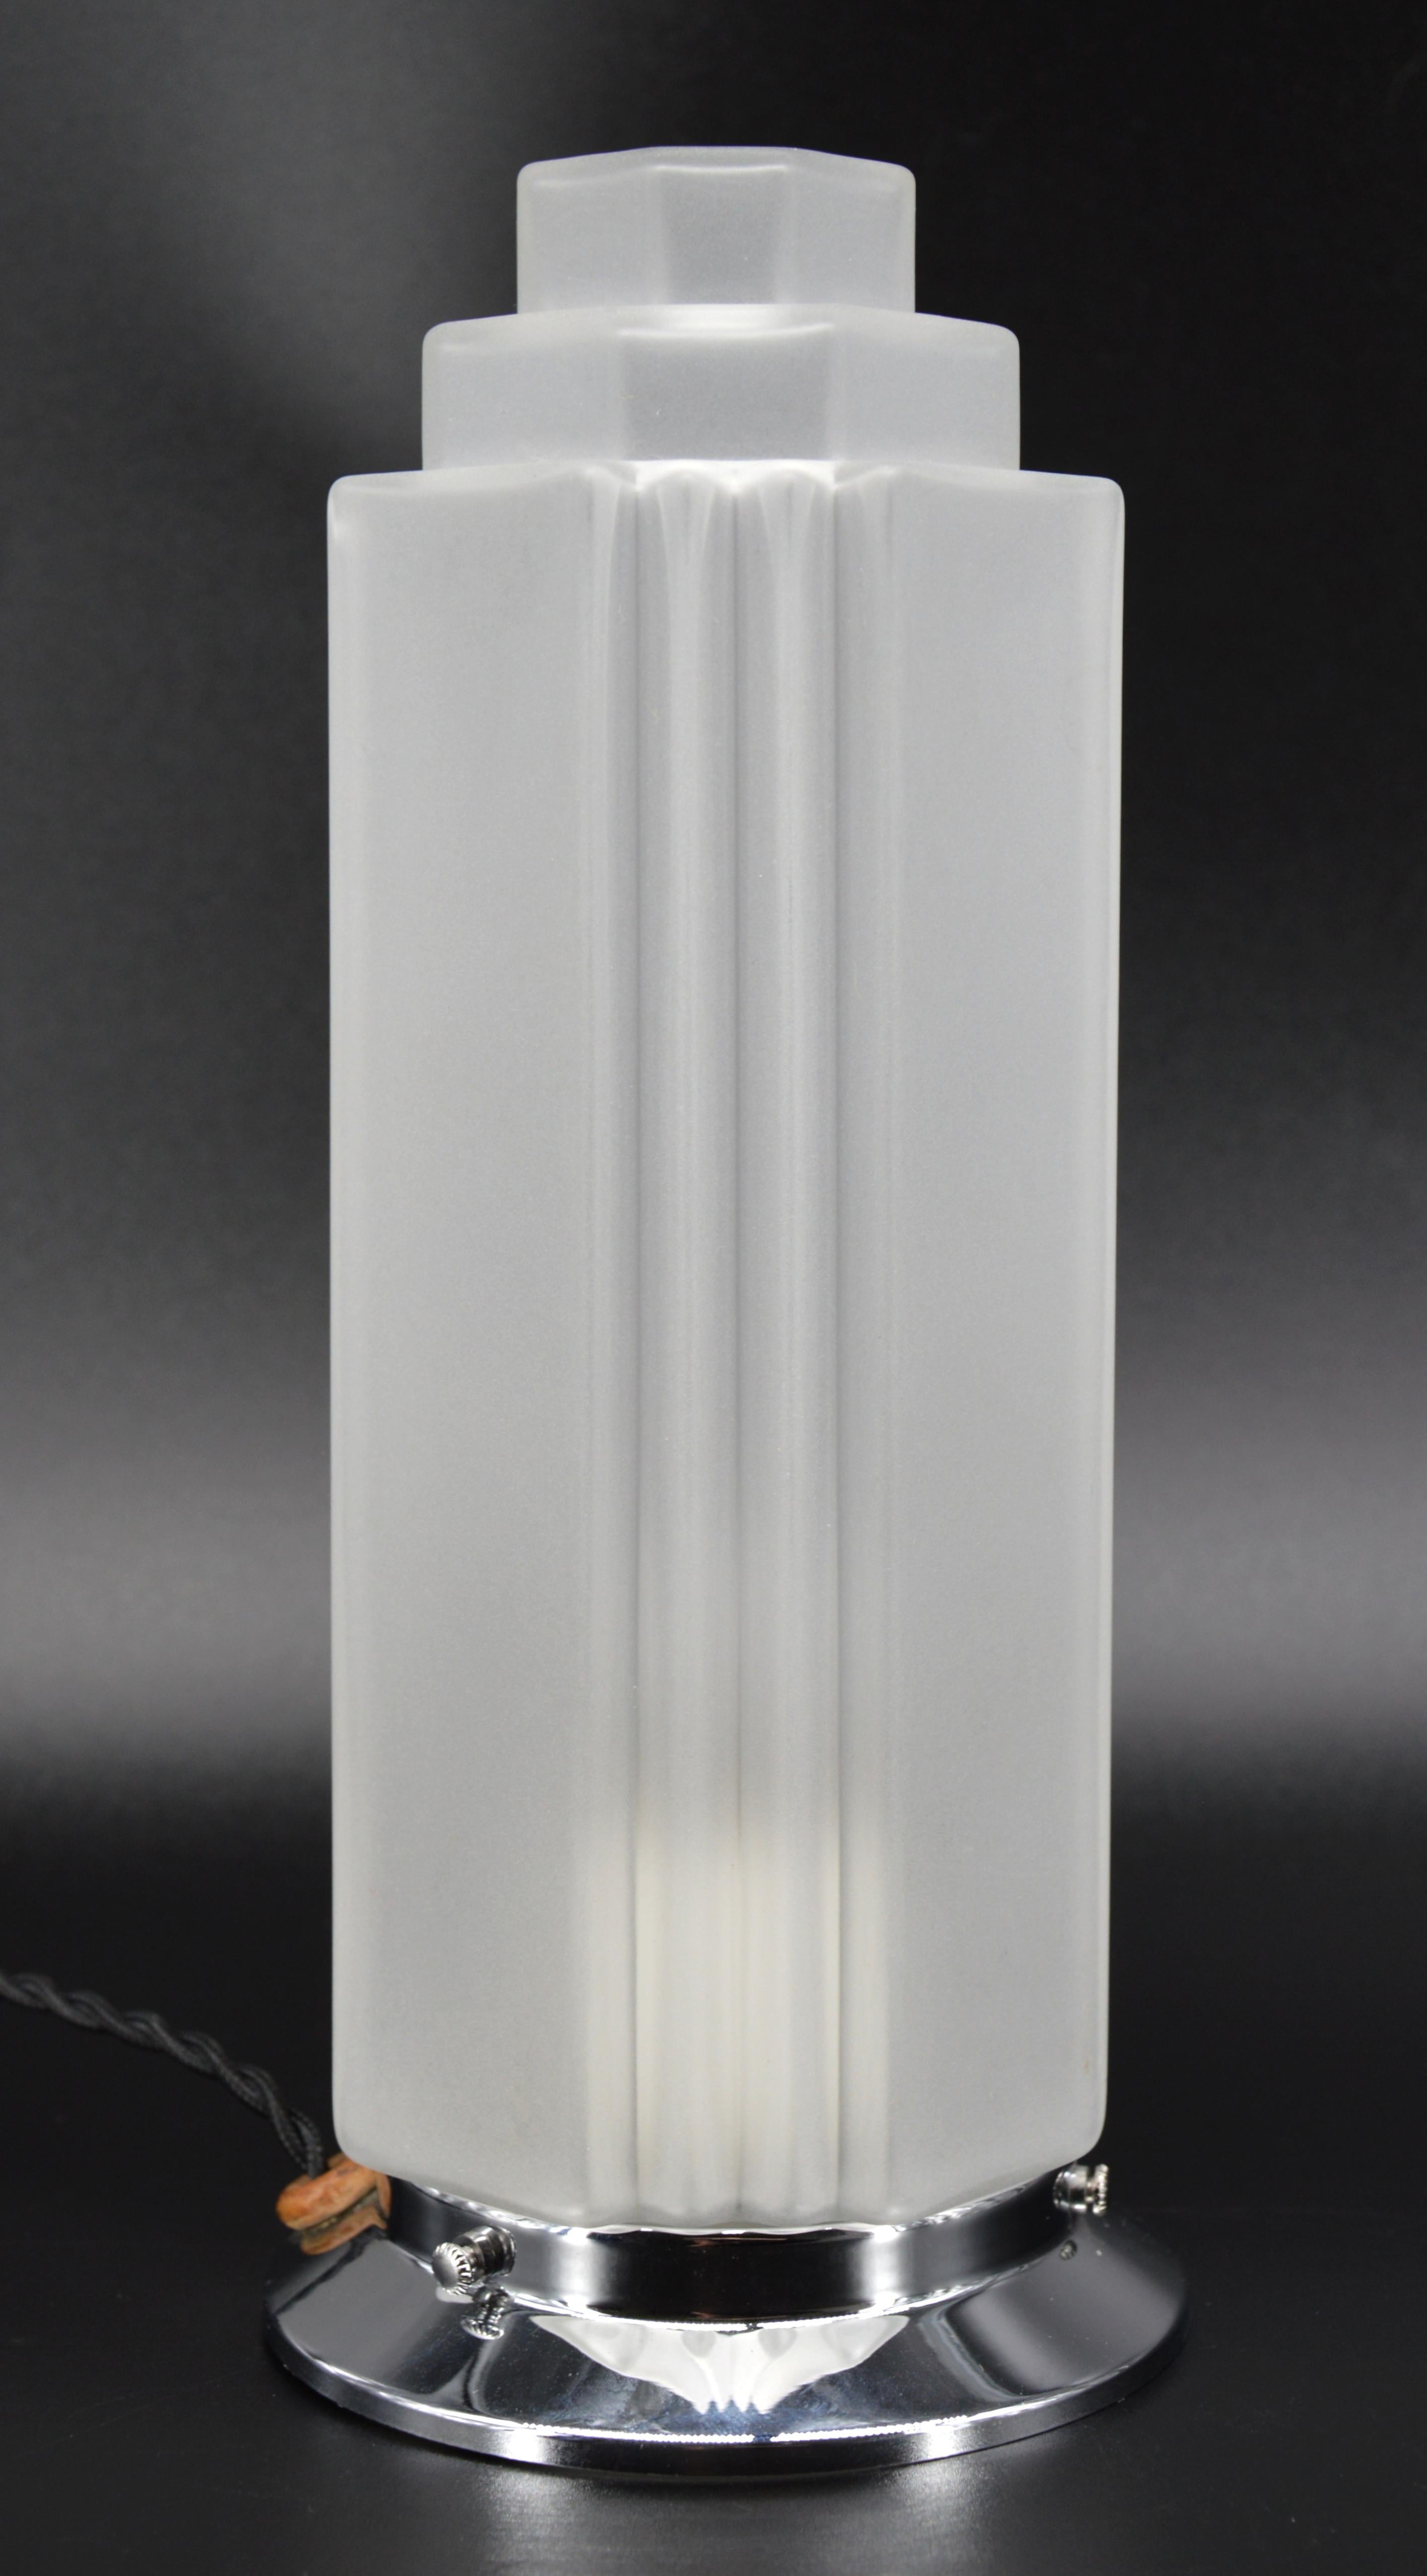 Französische Art-Déco-Tischlampe, Frankreich, 1930er Jahre. Form eines Wolkenkratzers. Schirm aus Milchglas auf verchromtem Sockel. 3 Lampen sind verfügbar. Höhe: 26,8 cm (10,6